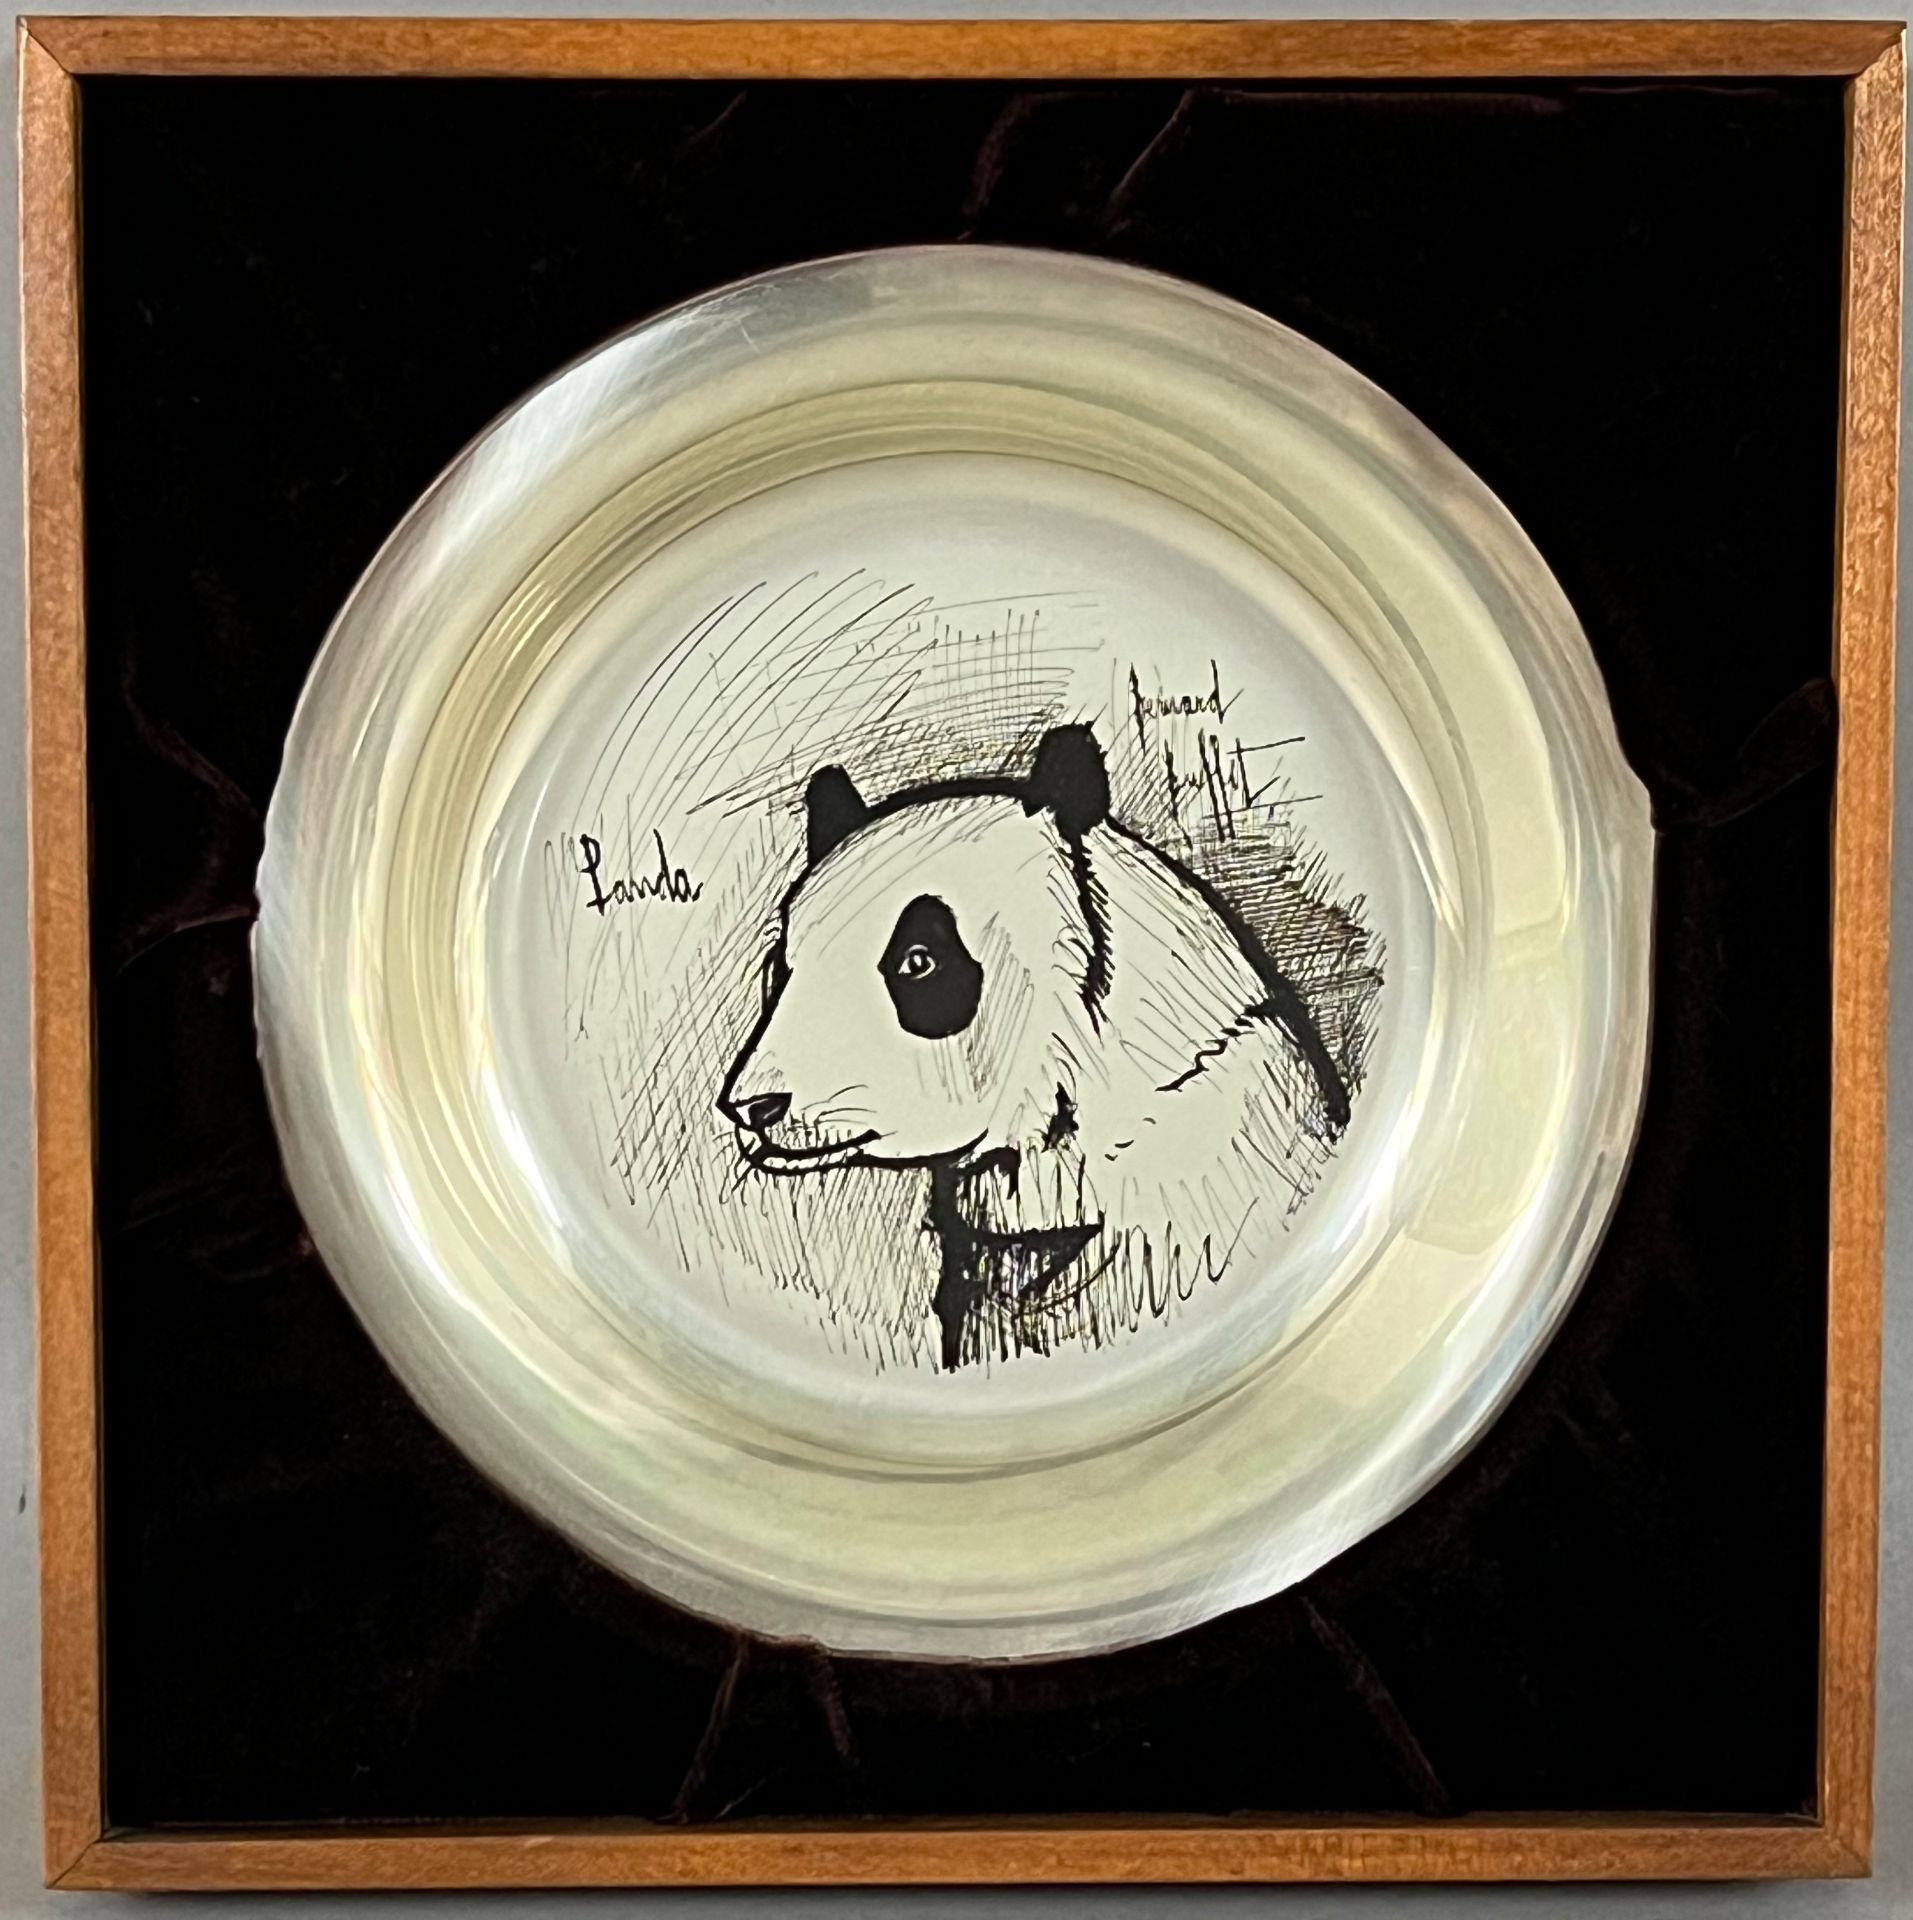 Bernard BUFFET (1928 - 1999). Künstlerteller aus 925 Silber. "Panda". 1974. - Bild 3 aus 5